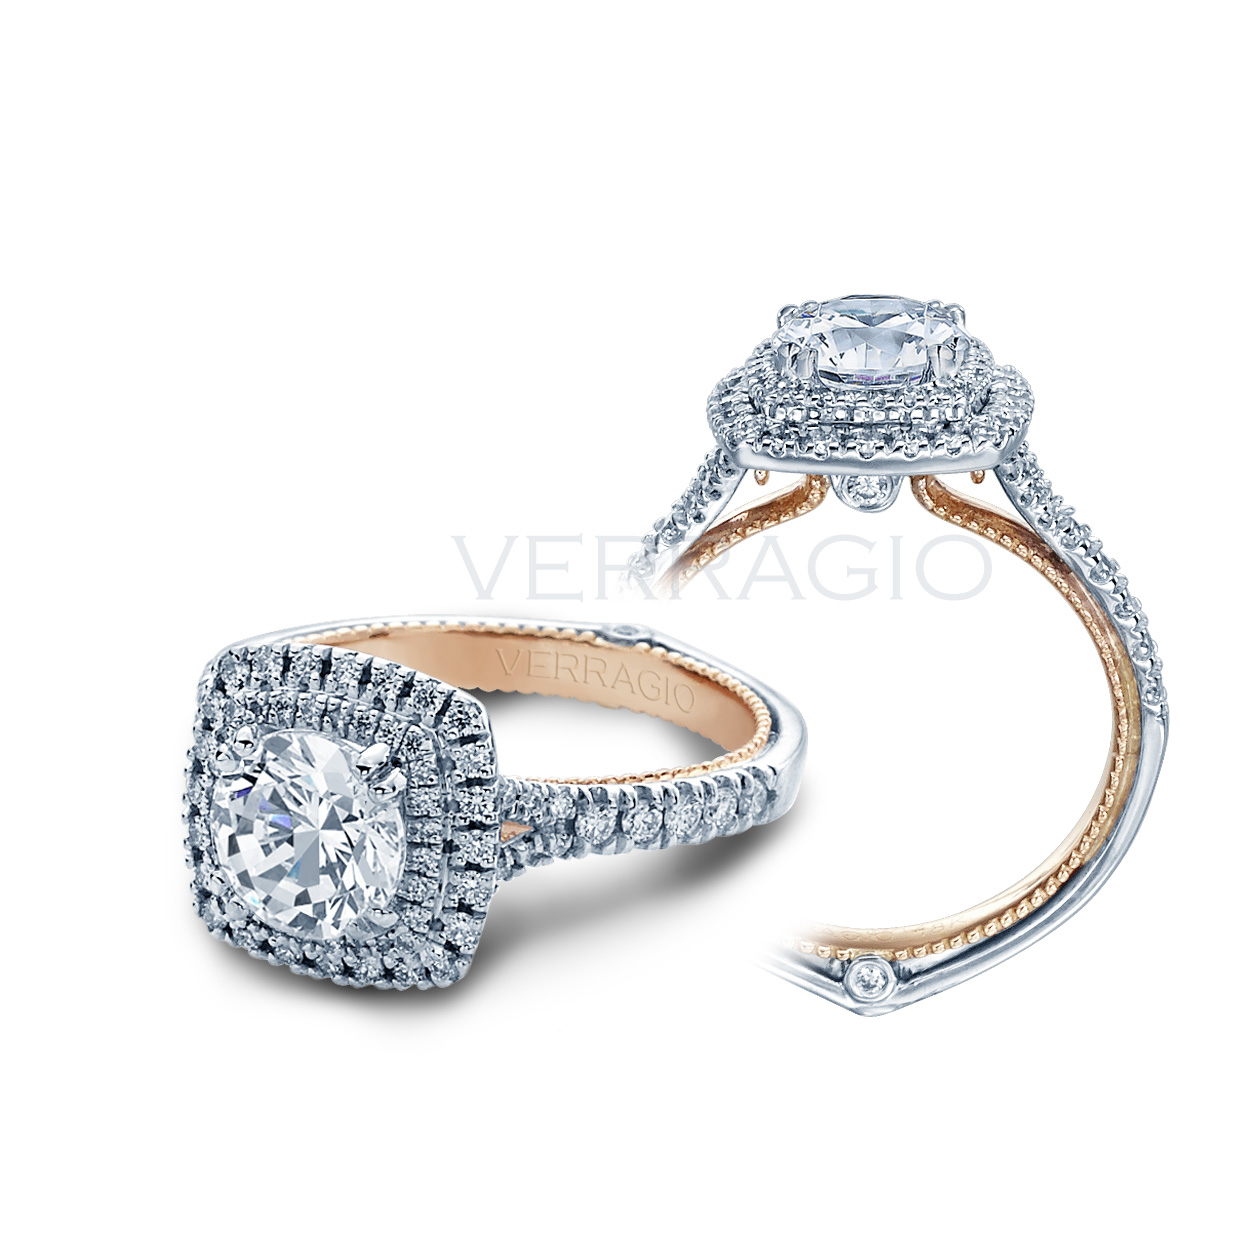 Verragio Couture Diamond Engagement Ring